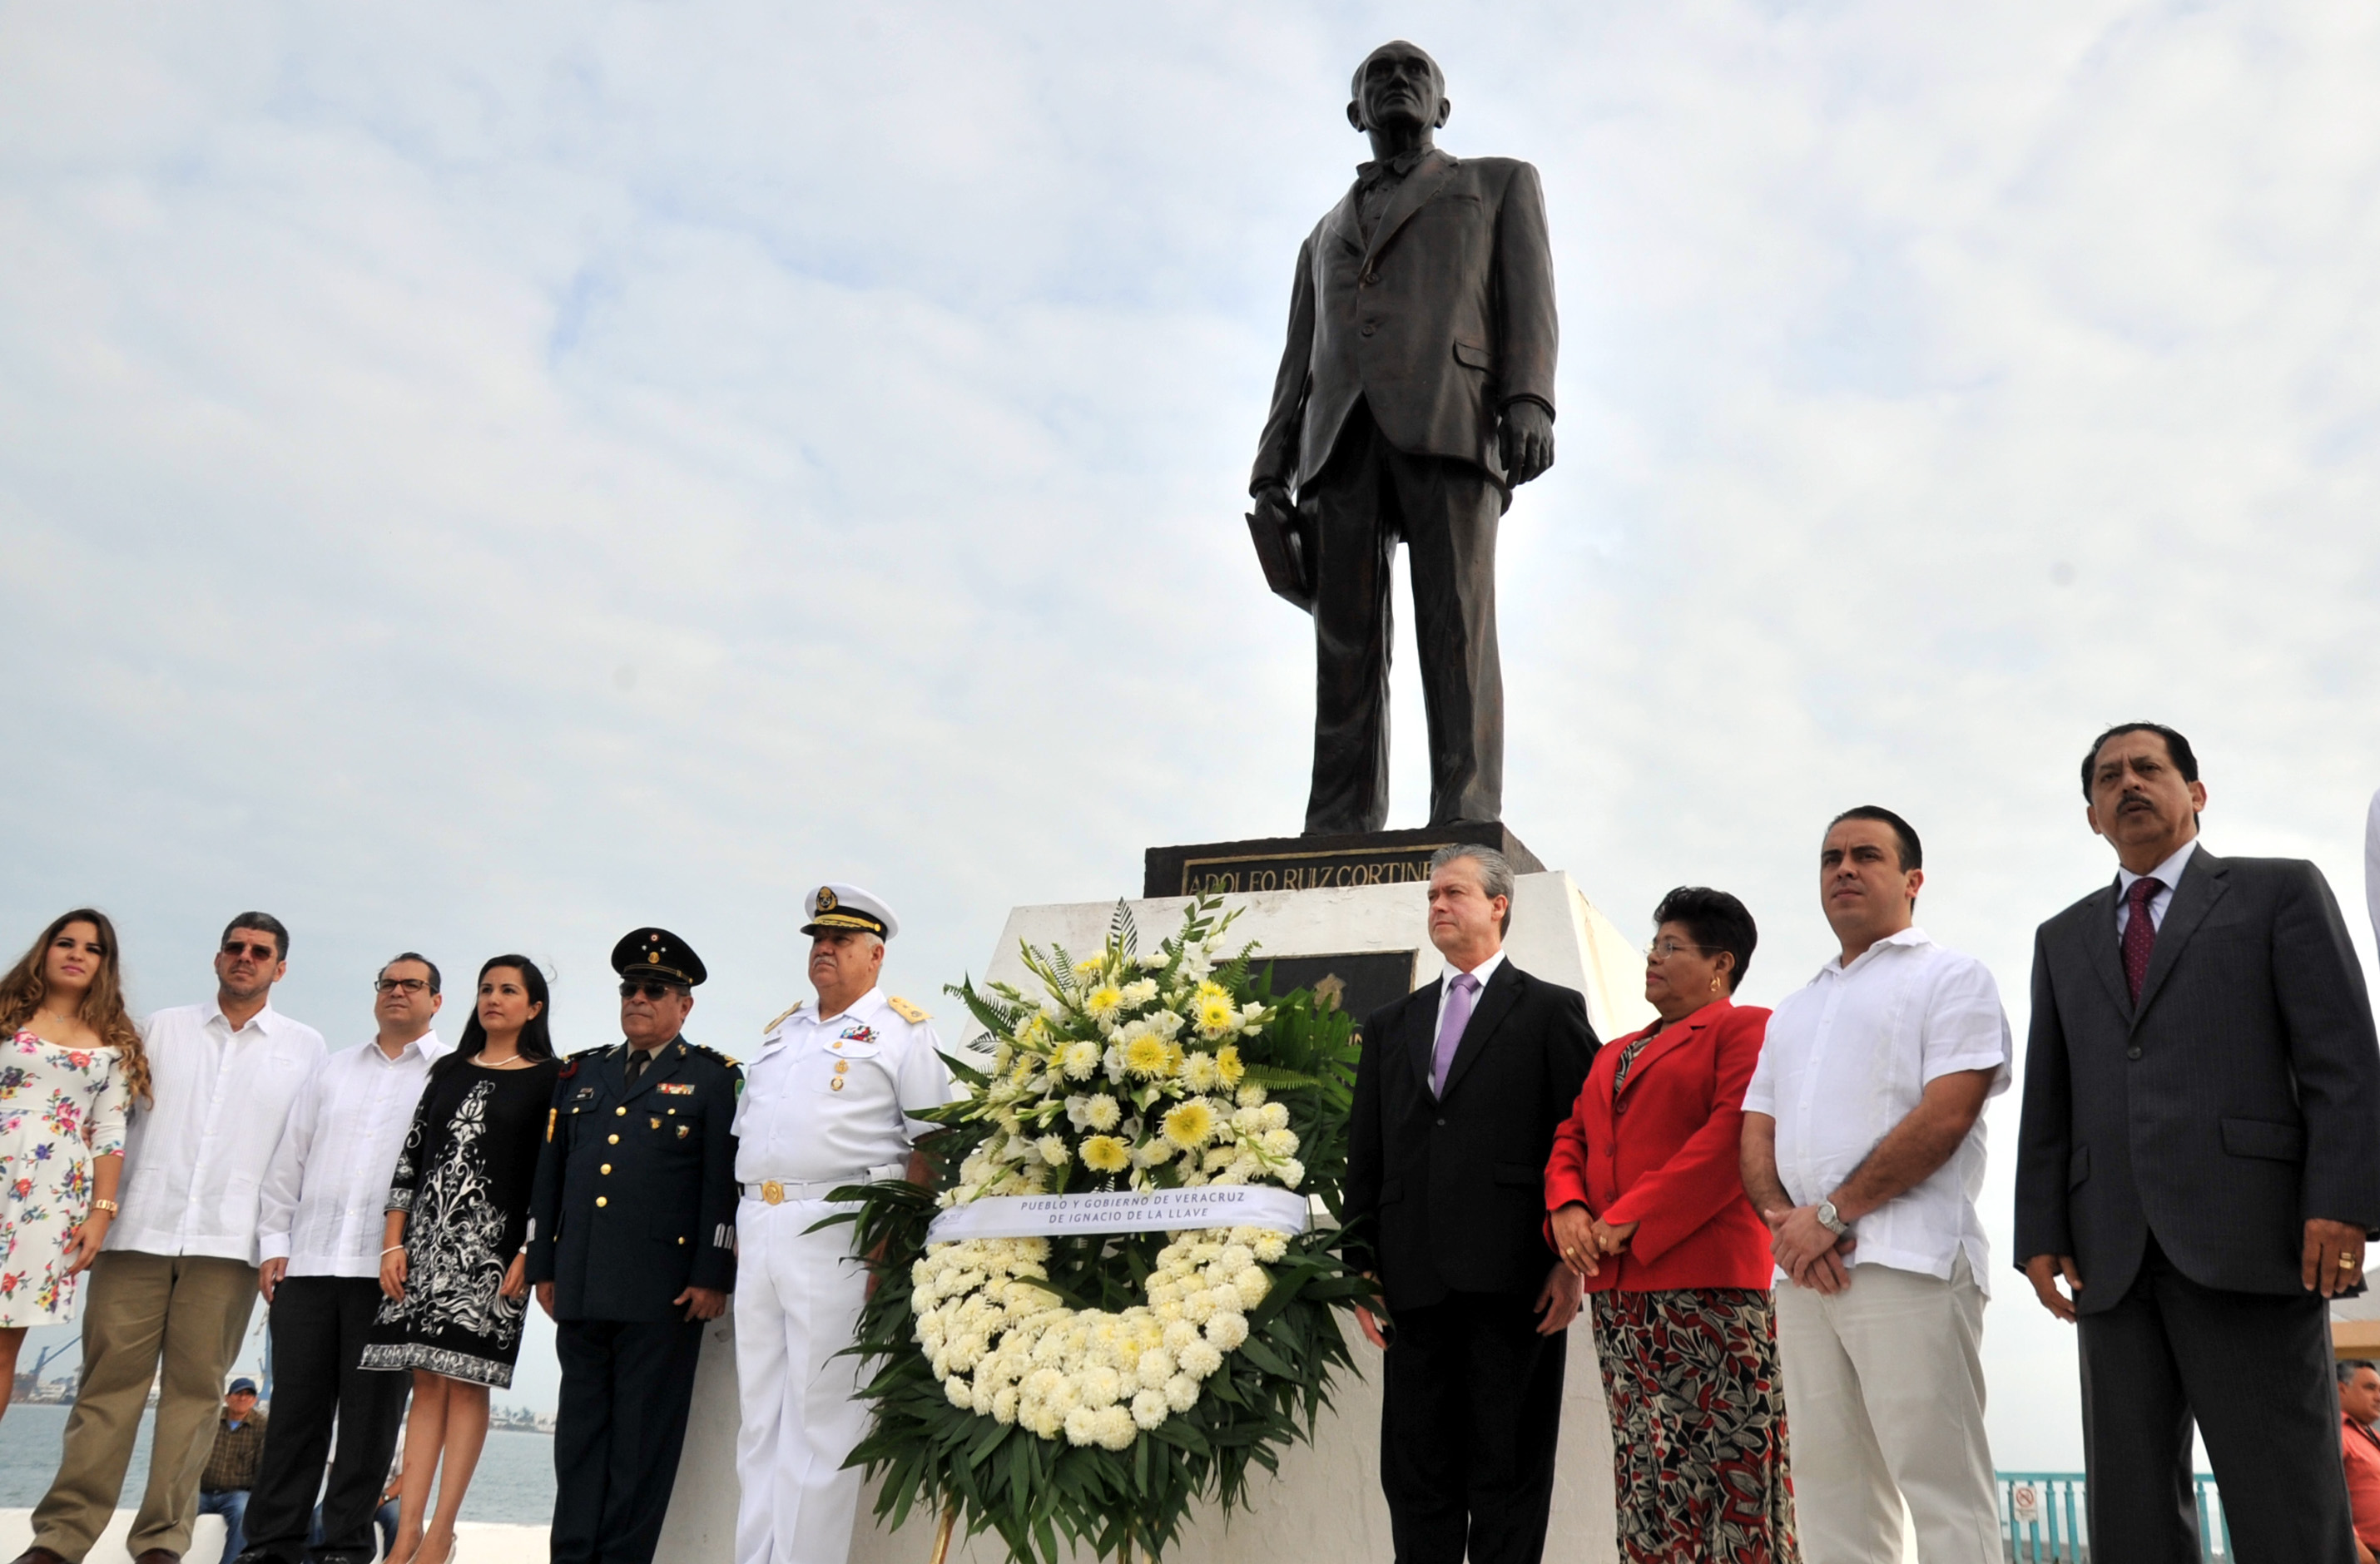 En Veracruz se comparte el legado de honradez y probidad del expresidente Adolfo Ruiz Cortines: Buganza